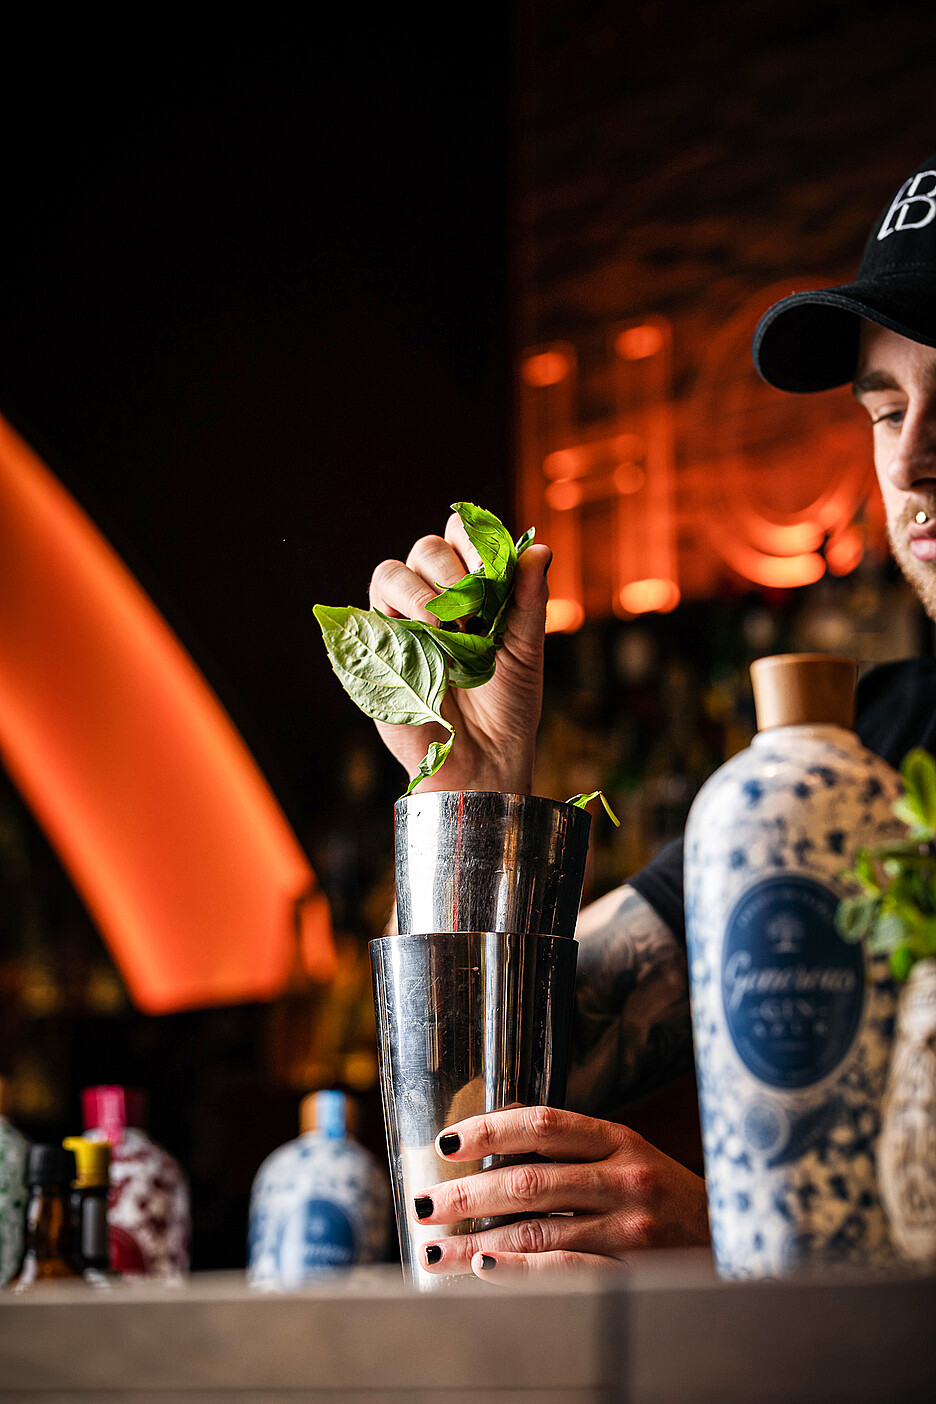 Lorsque Timo Läderach a repris la direction de l’Hôtel de Morat il y a deux ans, il a tout d’abord modifié le concept de bar, rédigé une nouvelle carte de bar et élargi l’assortiment de boissons.